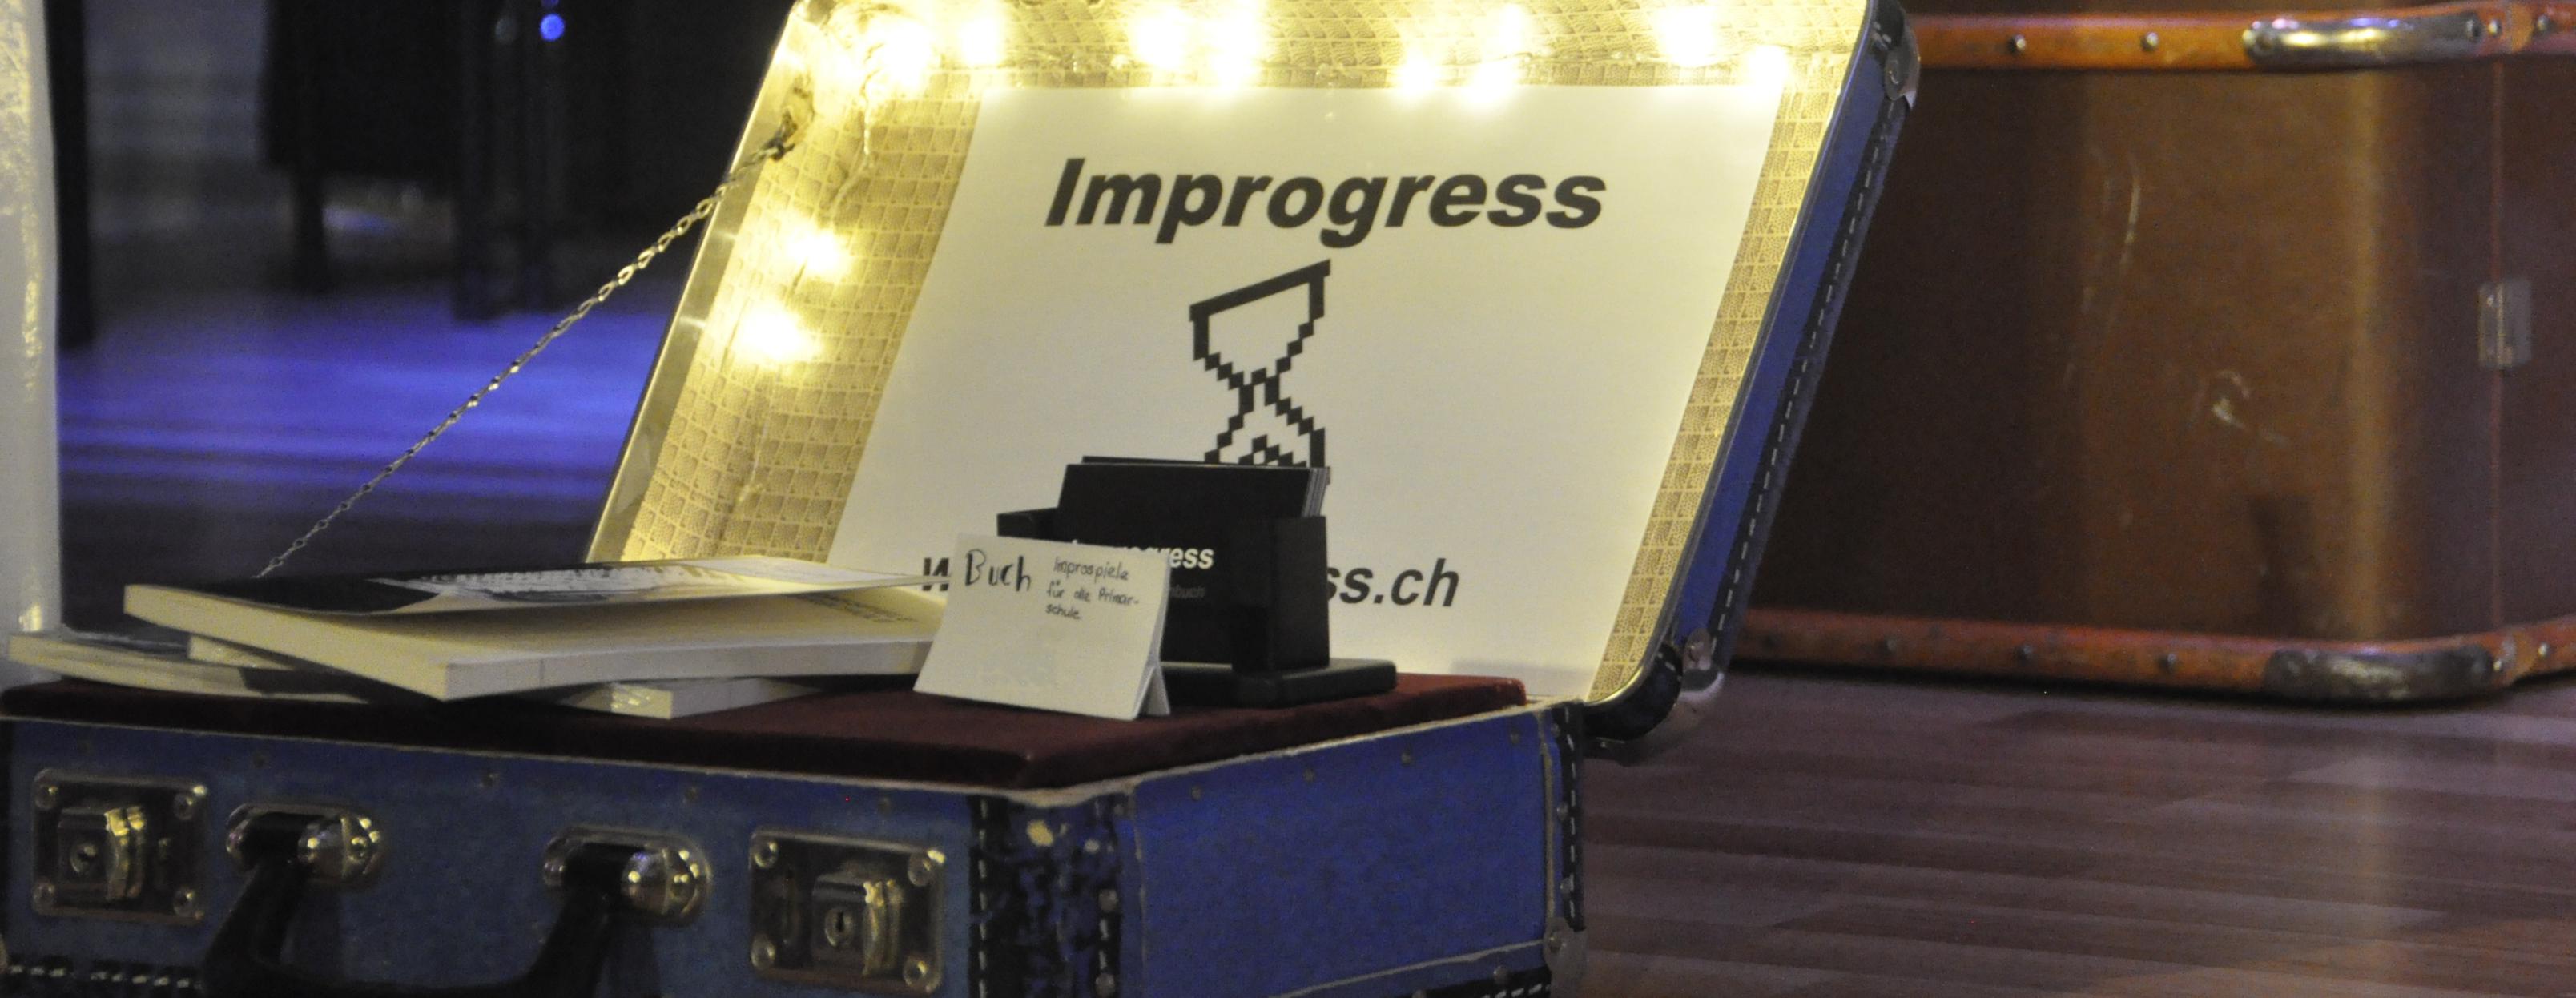 Improgress, Improtheatergruppe aus Wil St.Gallen